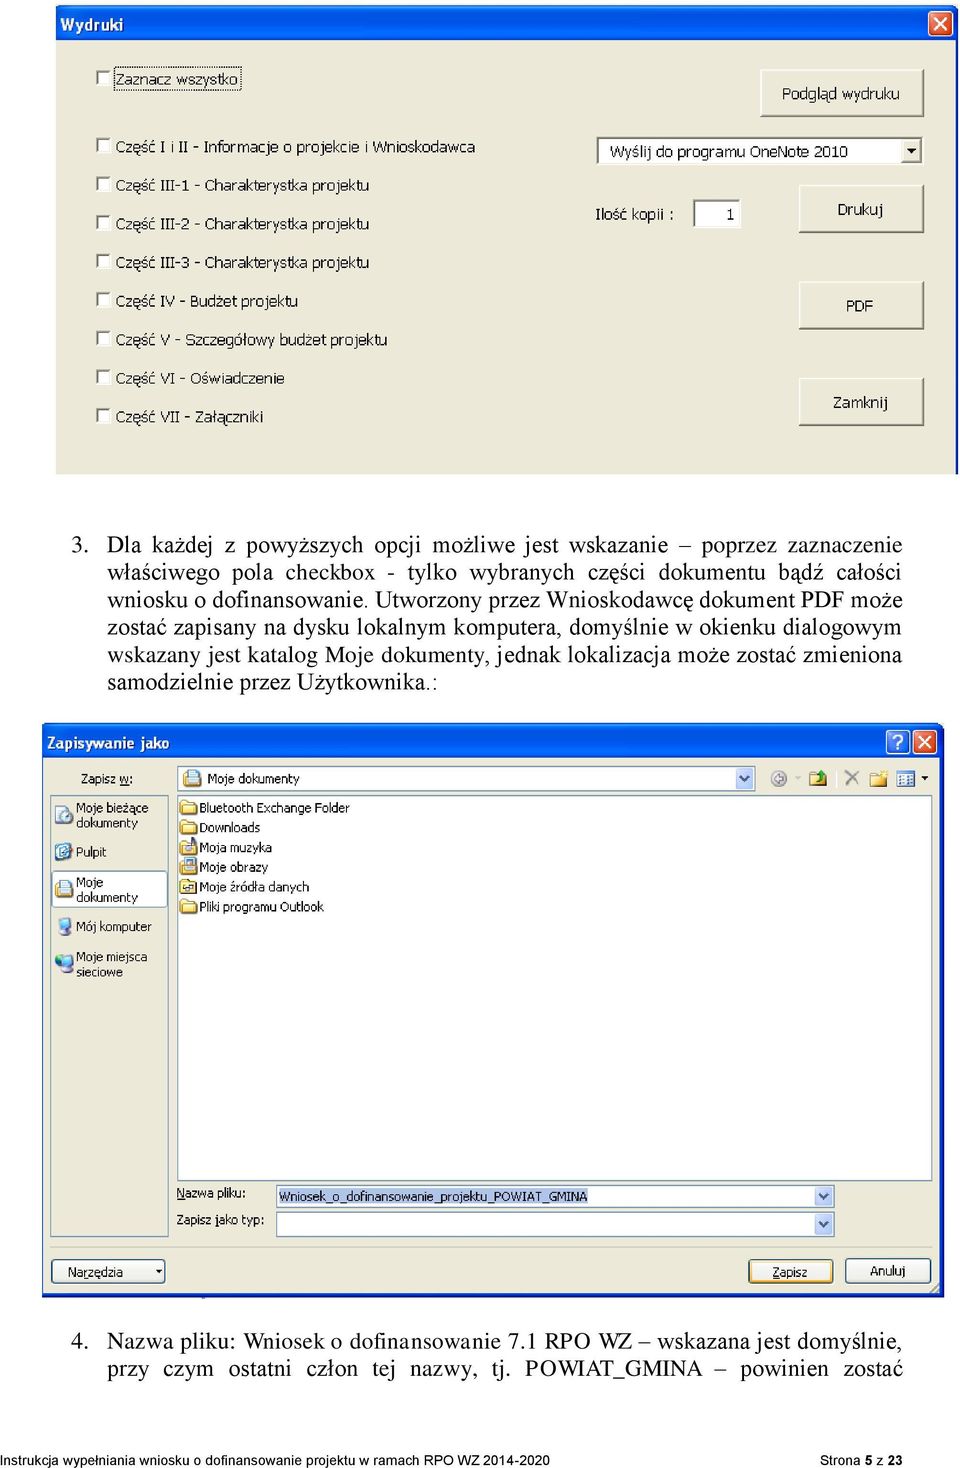 Utworzony przez Wnioskodawcę dokument PDF może zostać zapisany na dysku lokalnym komputera, domyślnie w okienku dialogowym wskazany jest katalog Moje dokumenty,